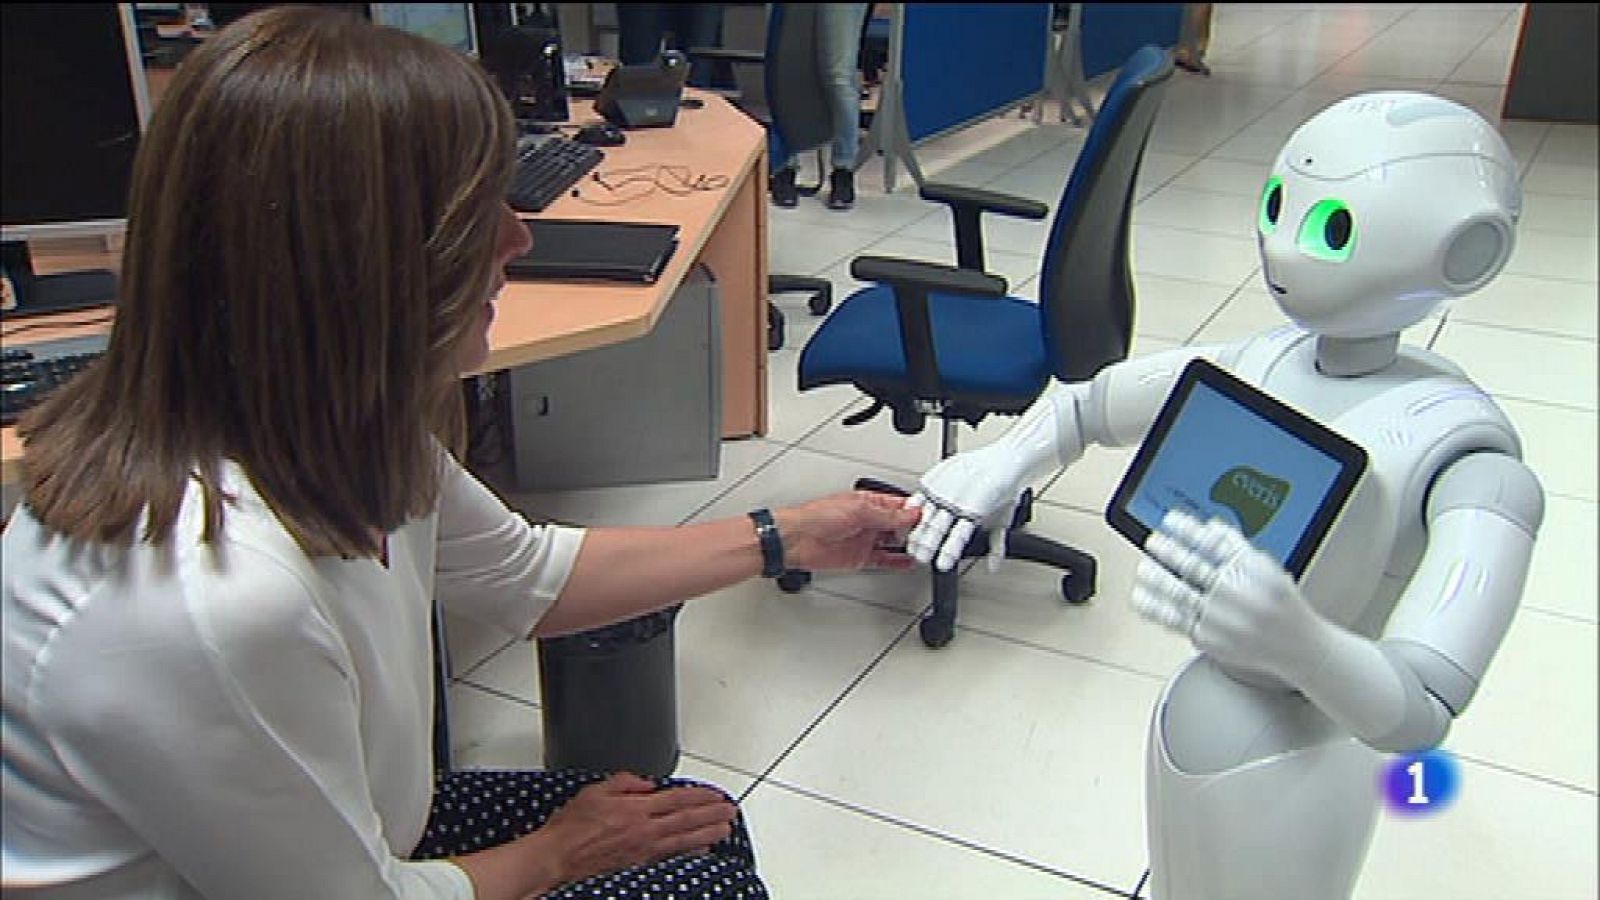 El robot Pepper visitará 'Emprende Digital' el próximo viernes